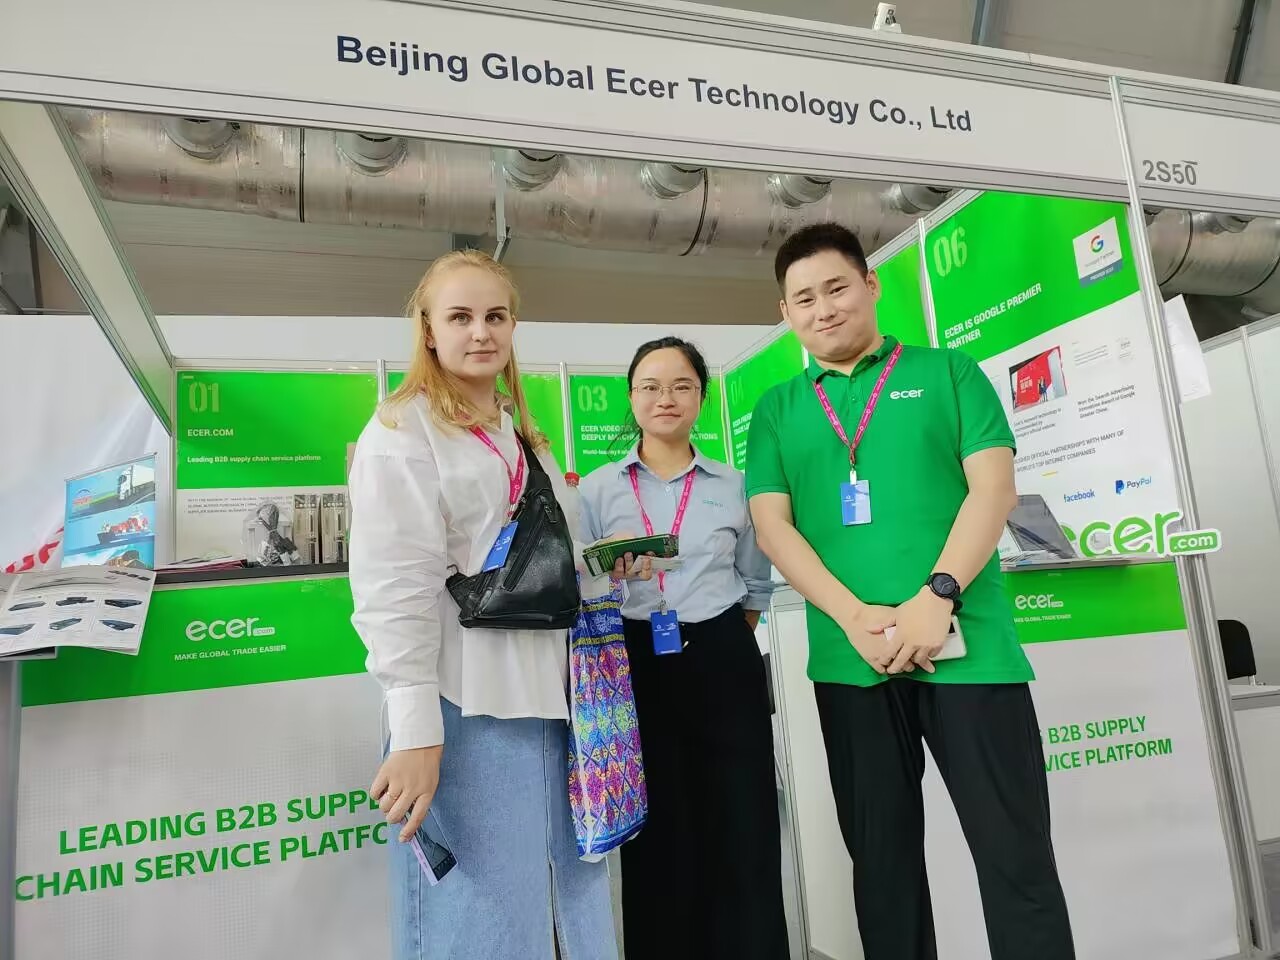 Chine Beijing Silk Road Enterprise Management Services Co.,LTD